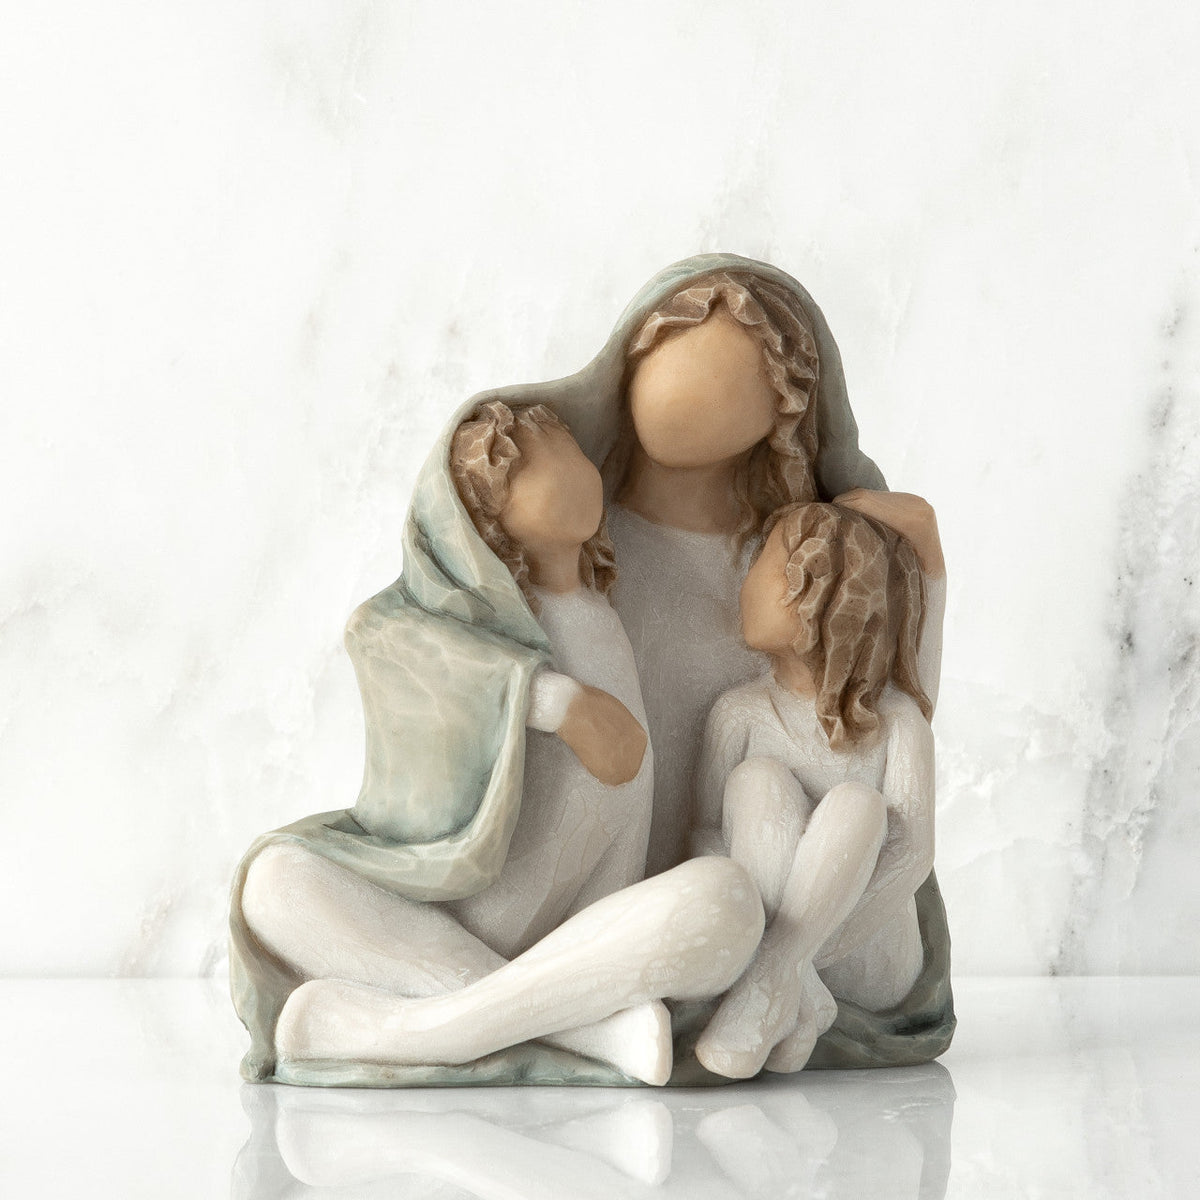 Cozy Figurine